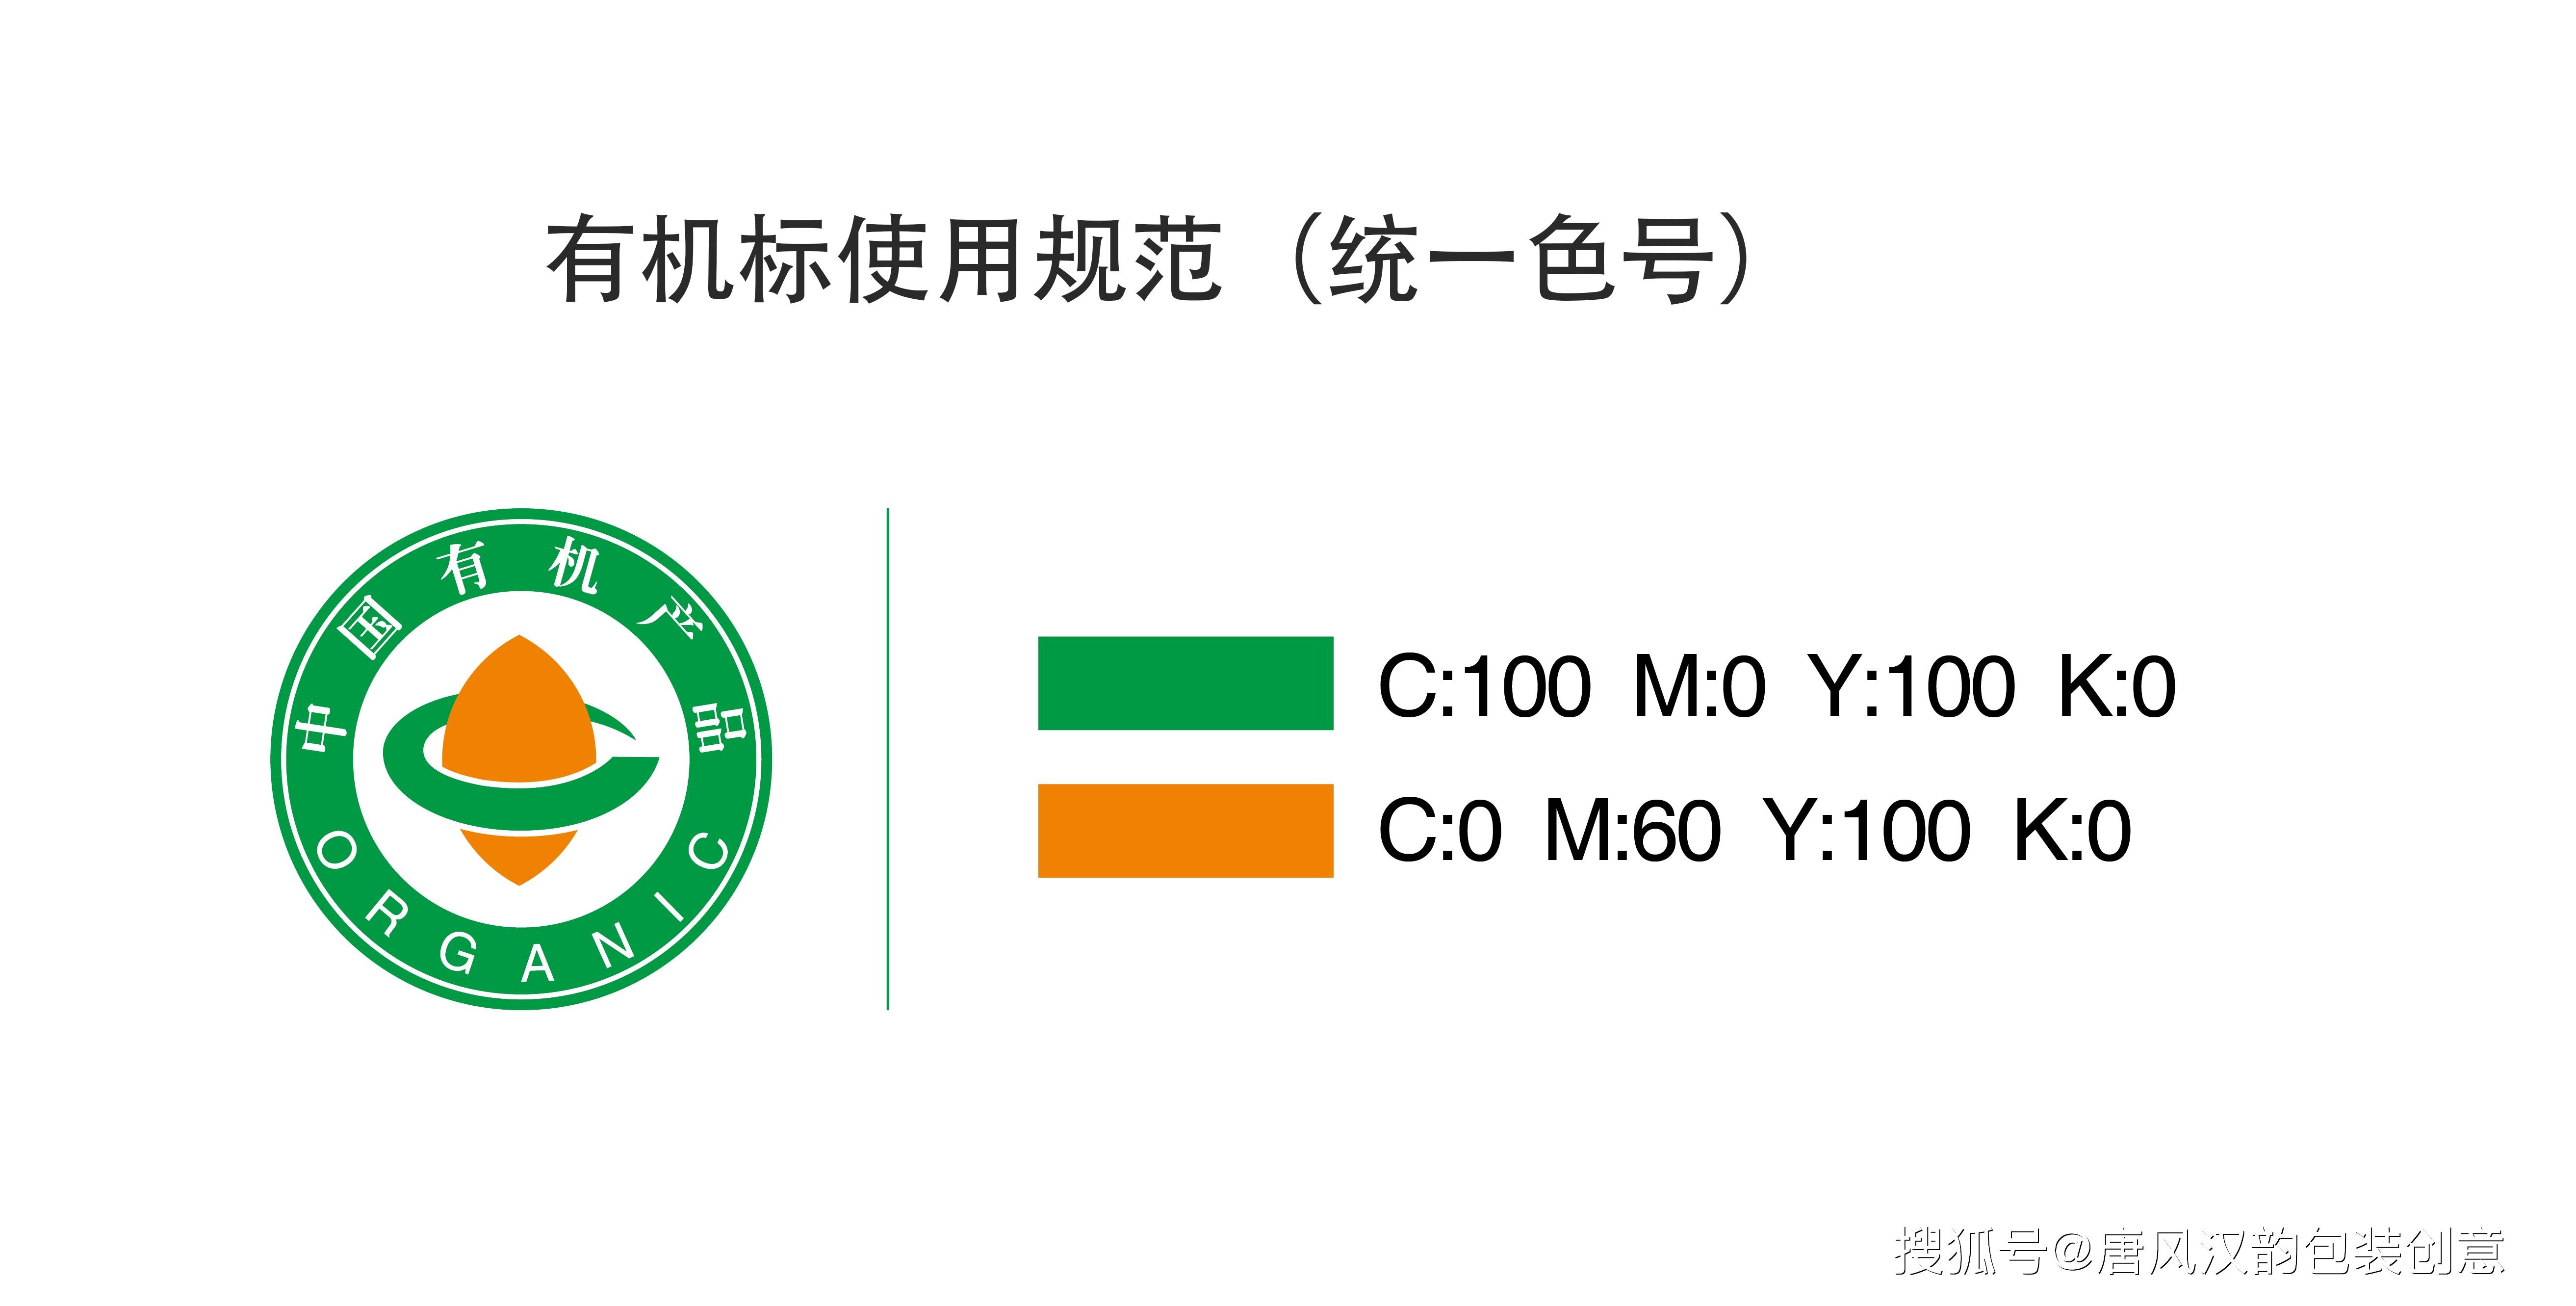 在有机食品包装设计中的色值规范 对于获得中国有机产品认证的产品,在